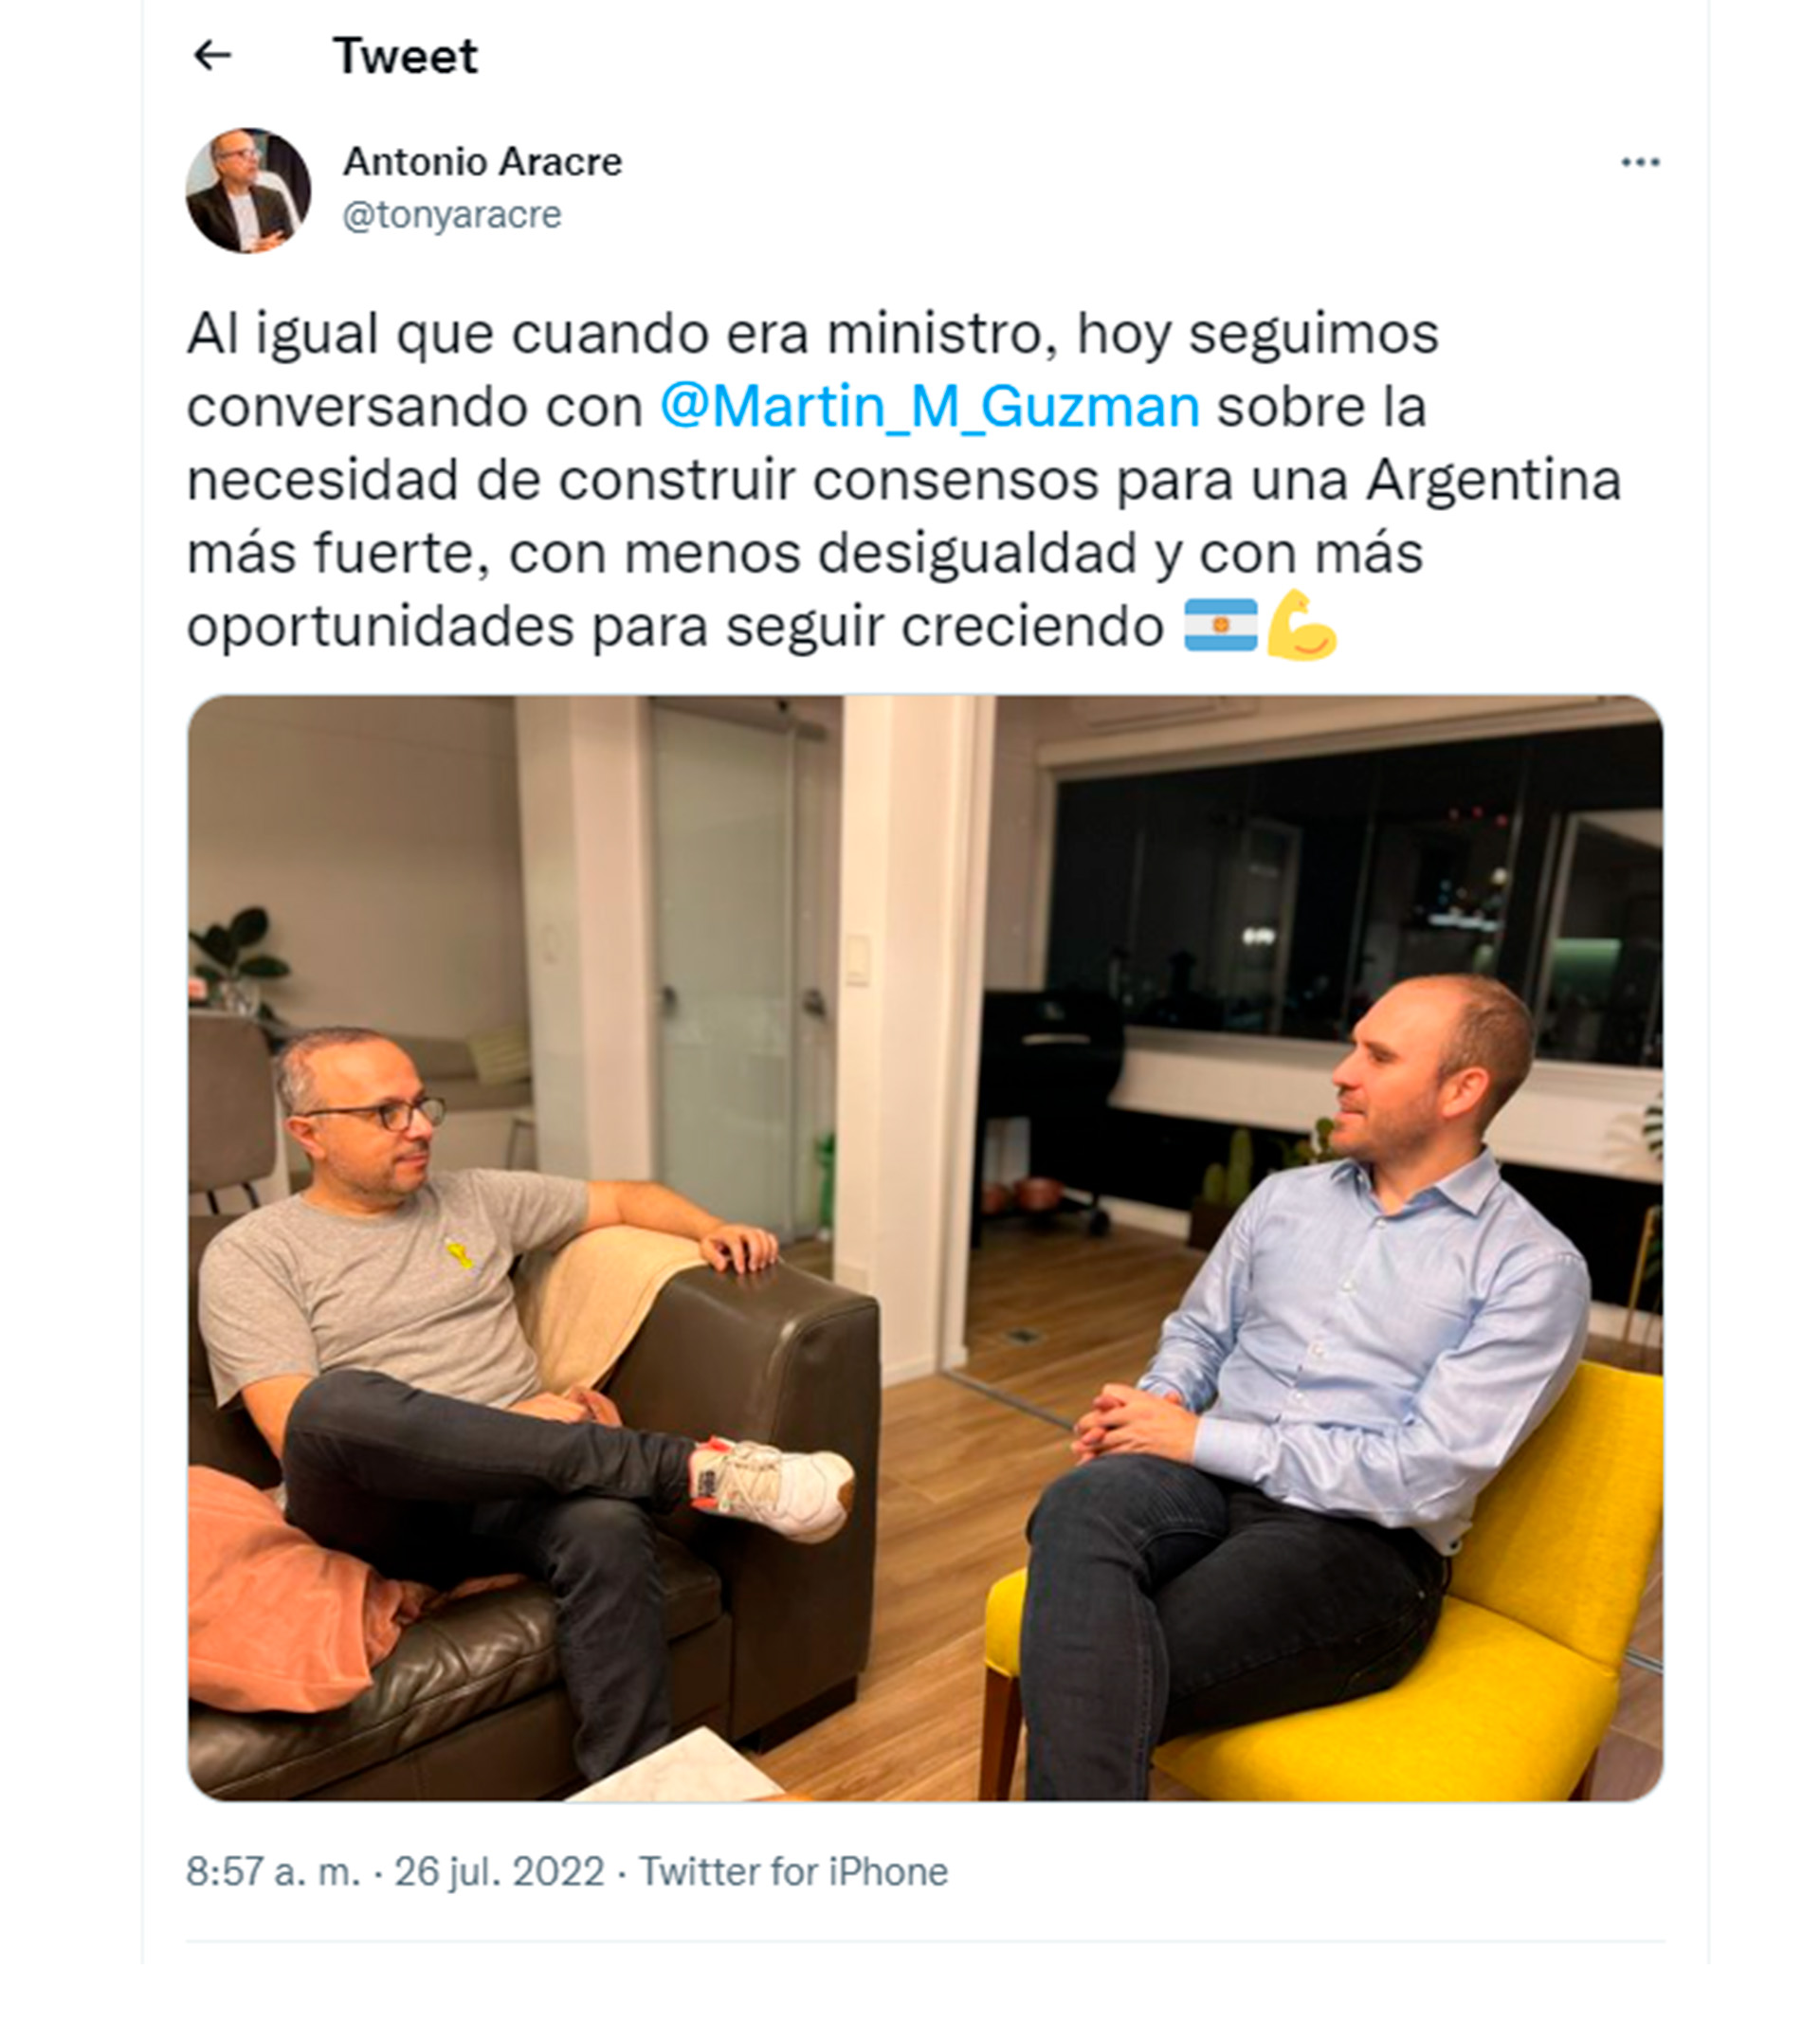 La publicación de Antonio Aracre, CEO de Syngenta, en Twitter.